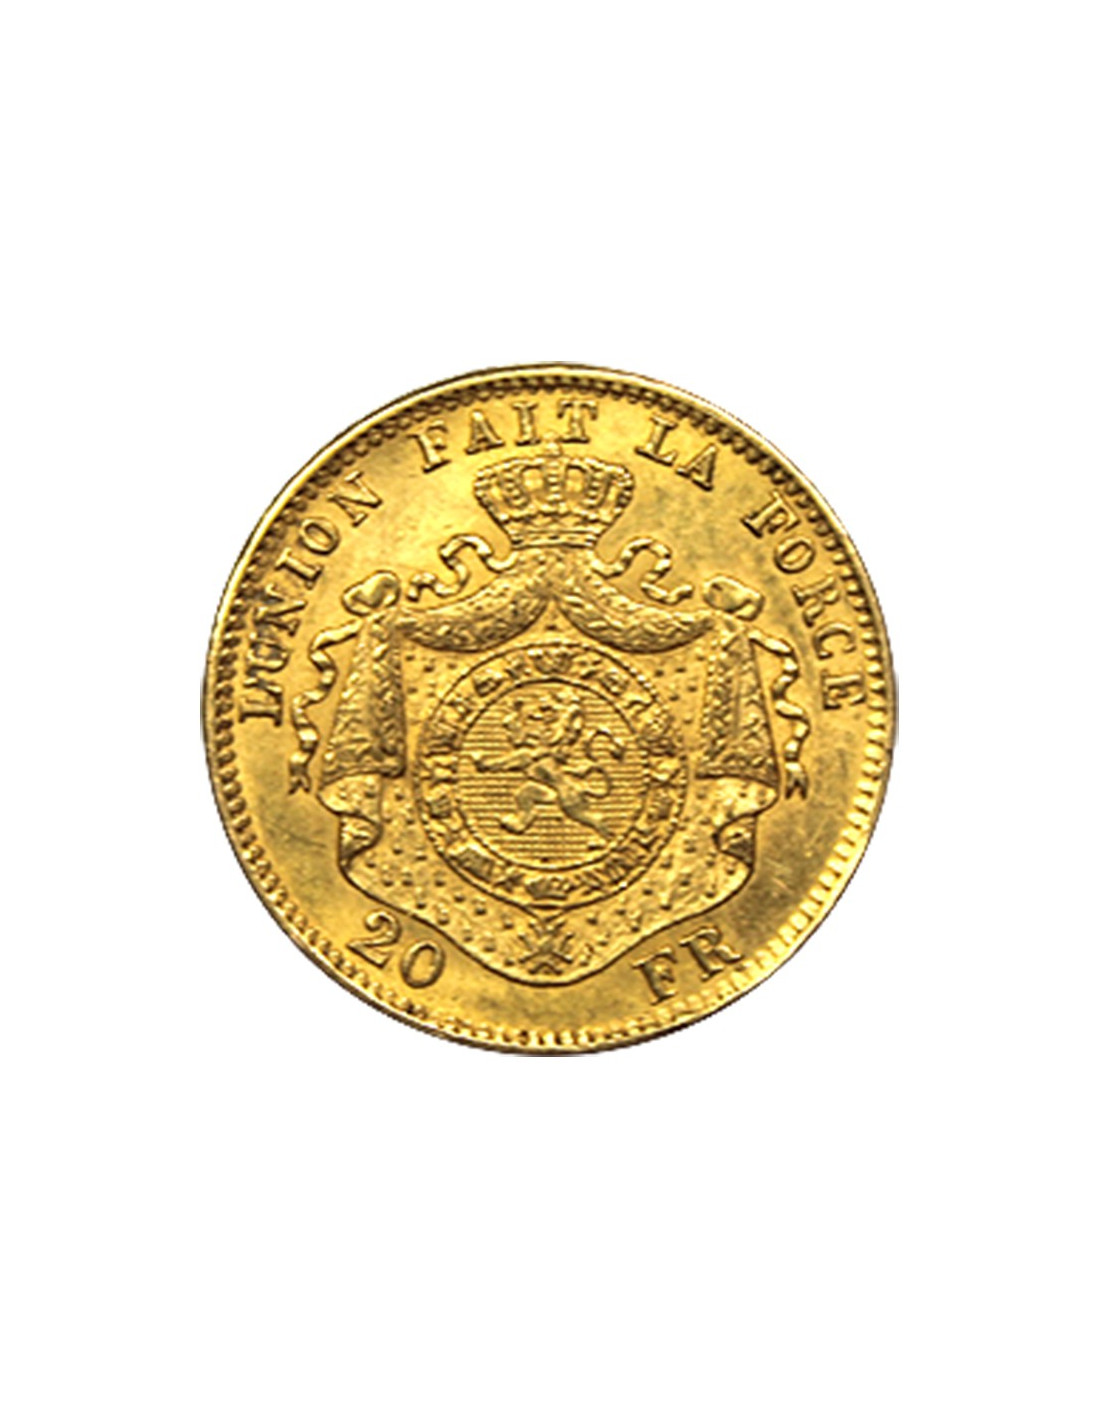 Collection pièces en argent de l'union latine (Abonnement)